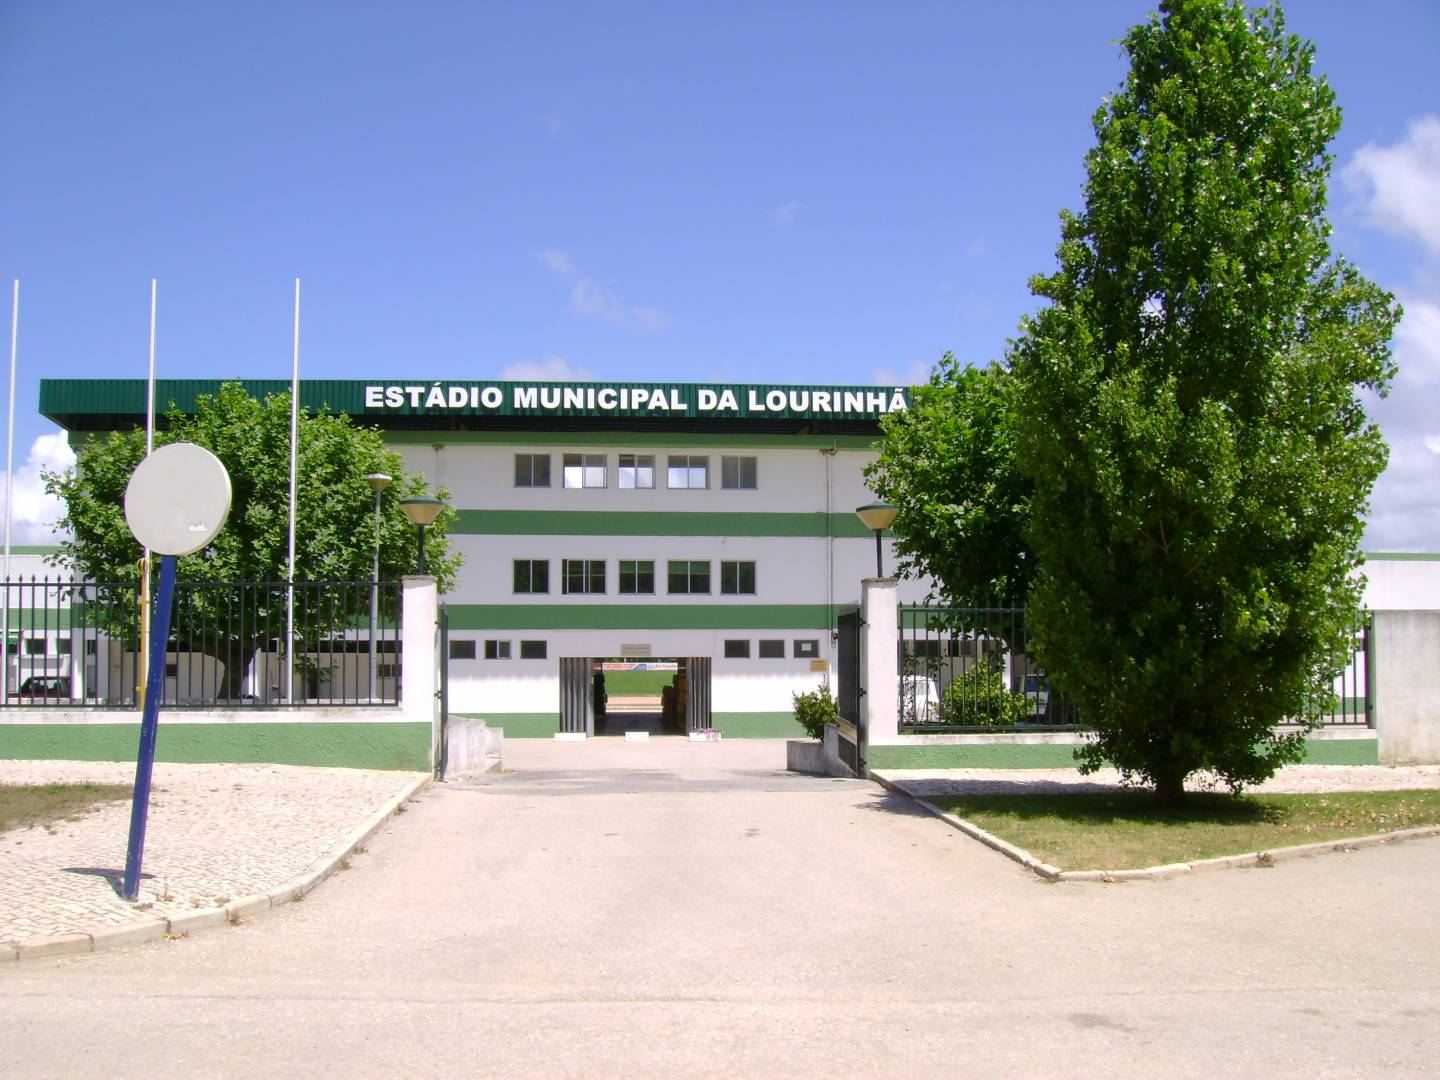 Estádio Municipal da Lourinhã